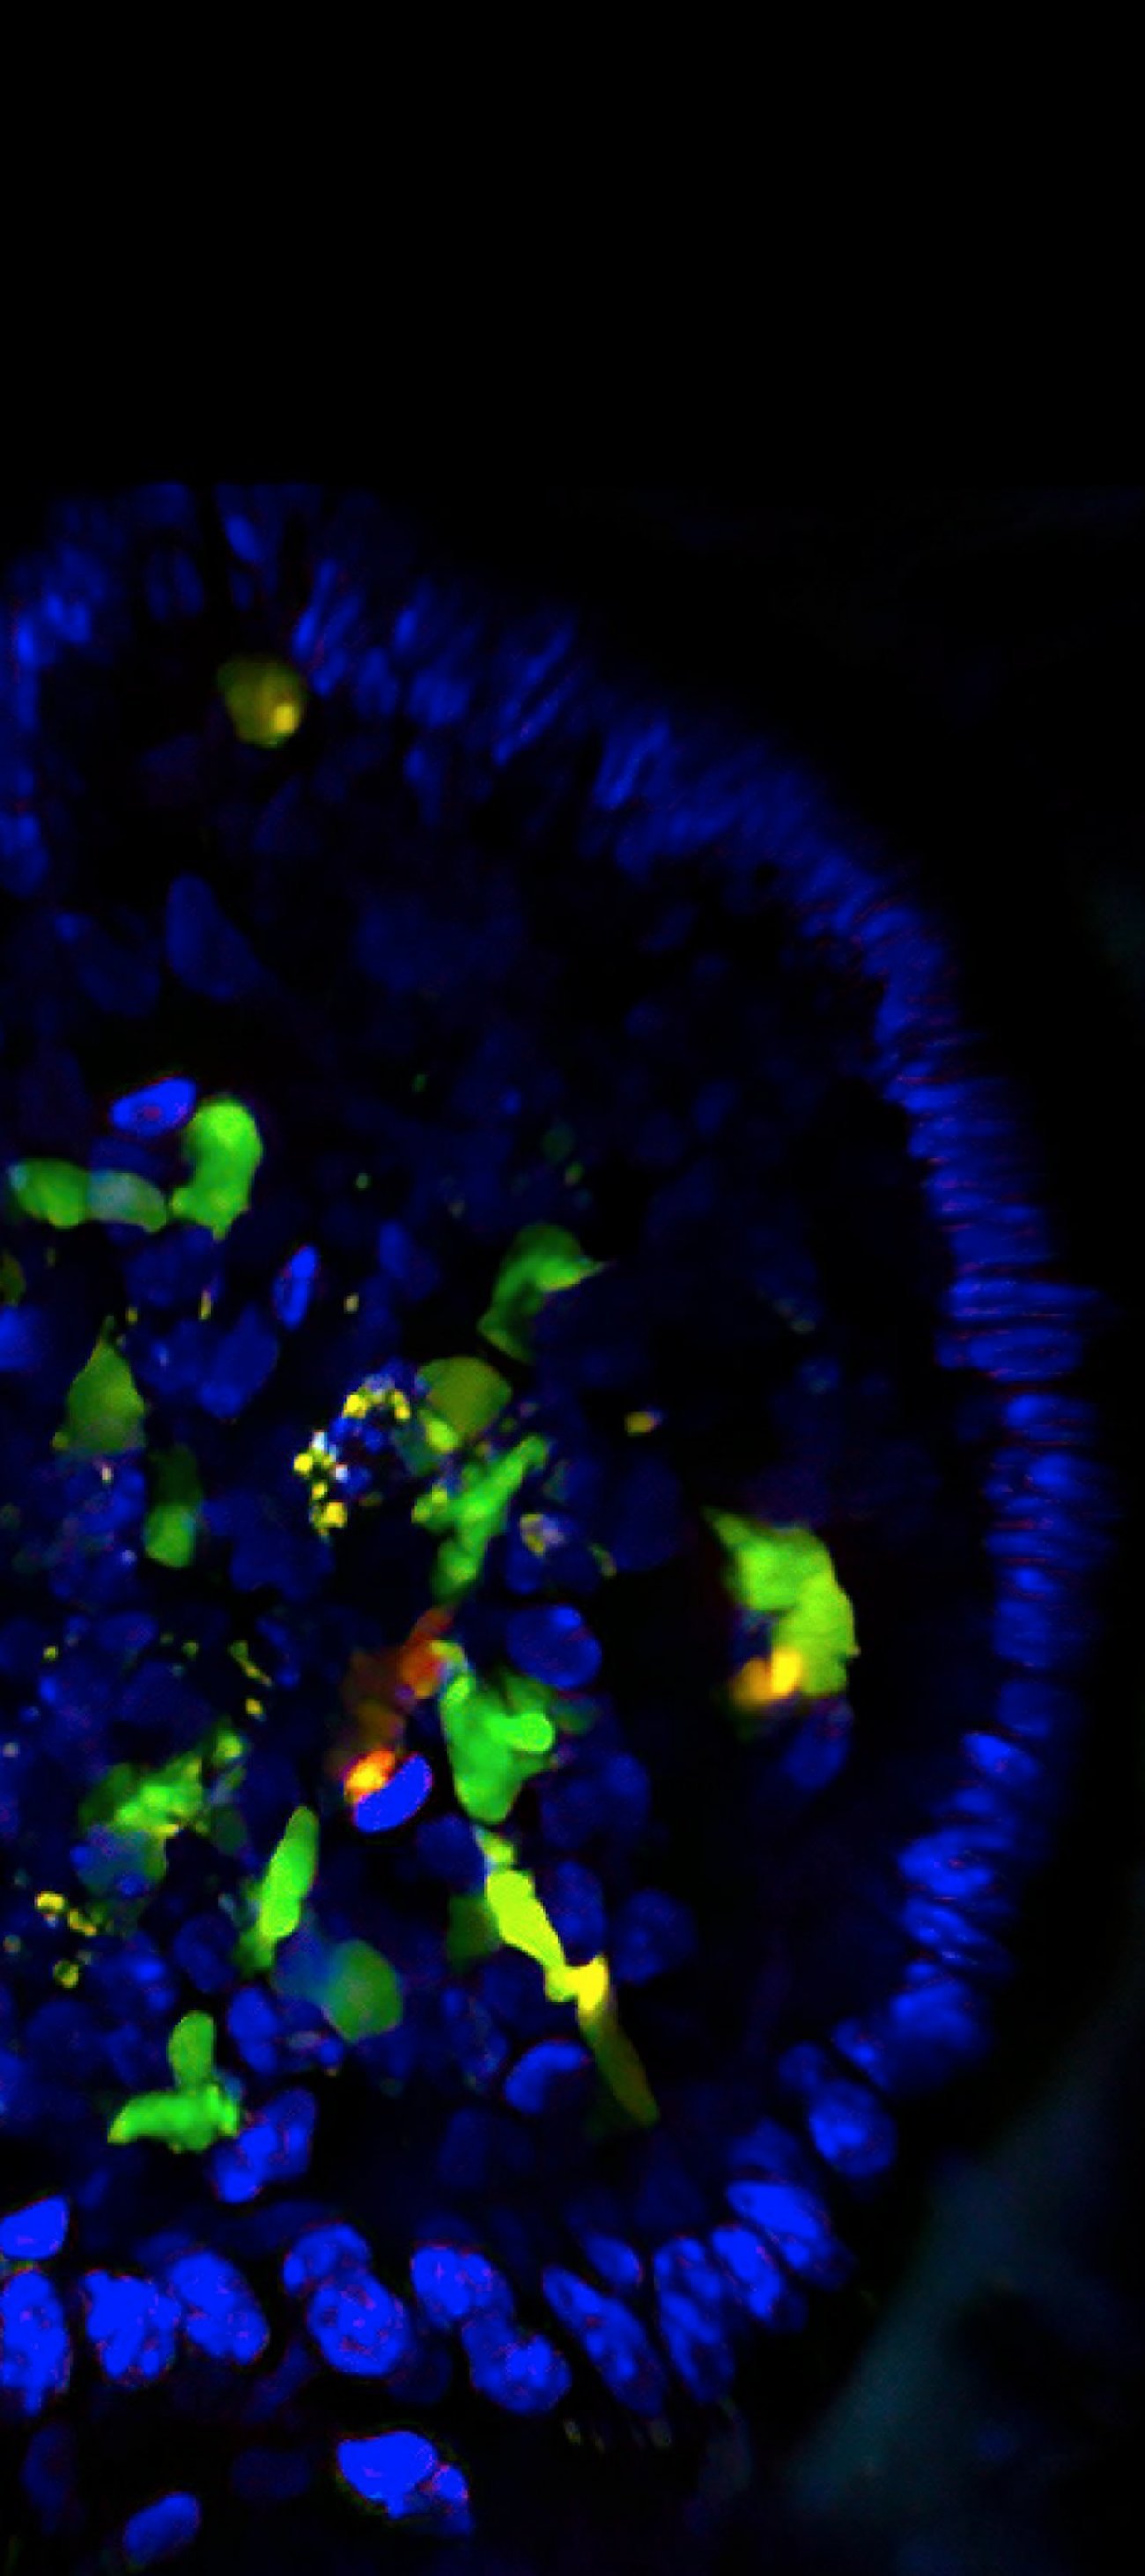 cellules lymphoïdes innées de type 3 - Institut Pasteur